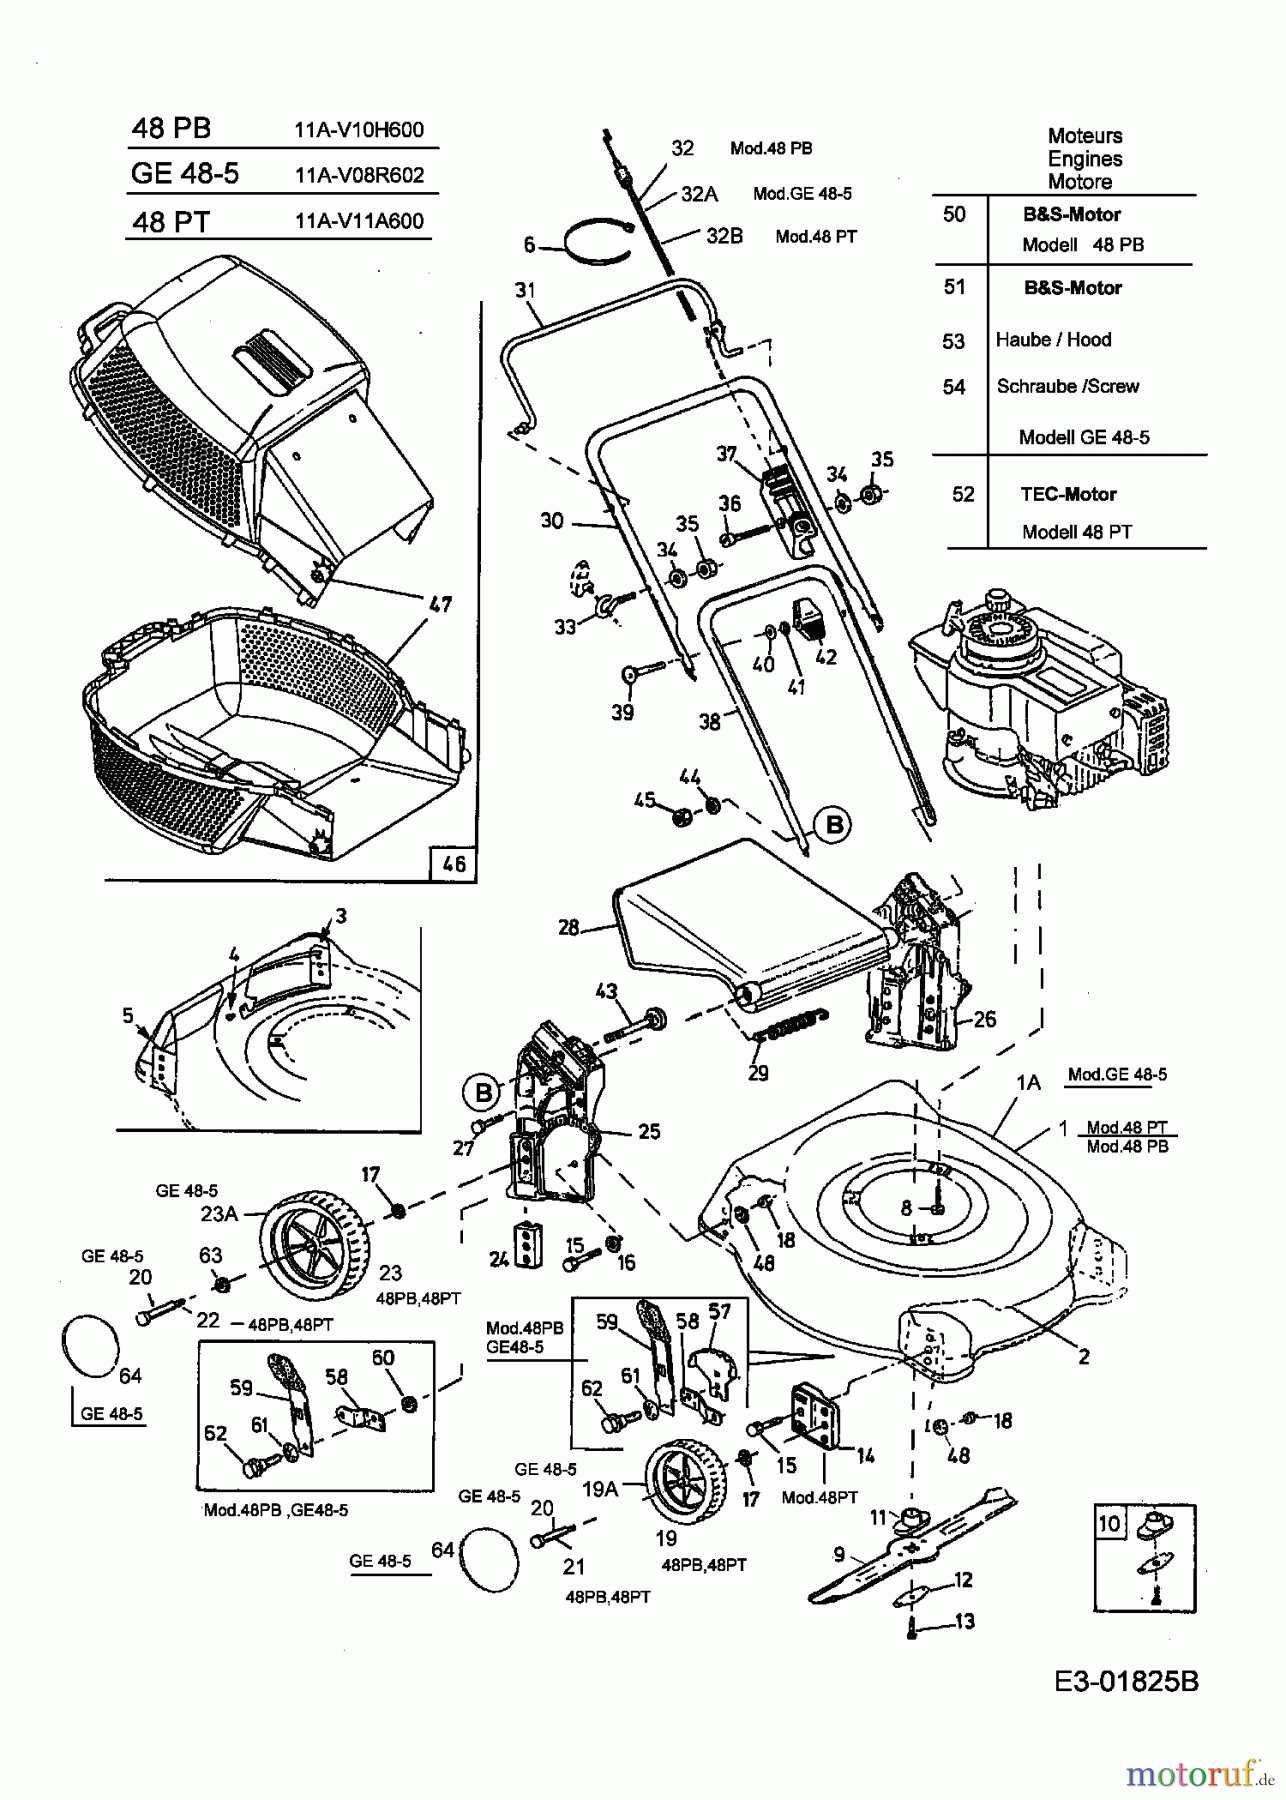  MTD Motormäher 48 PT 11A-V11A600  (2004) Grundgerät